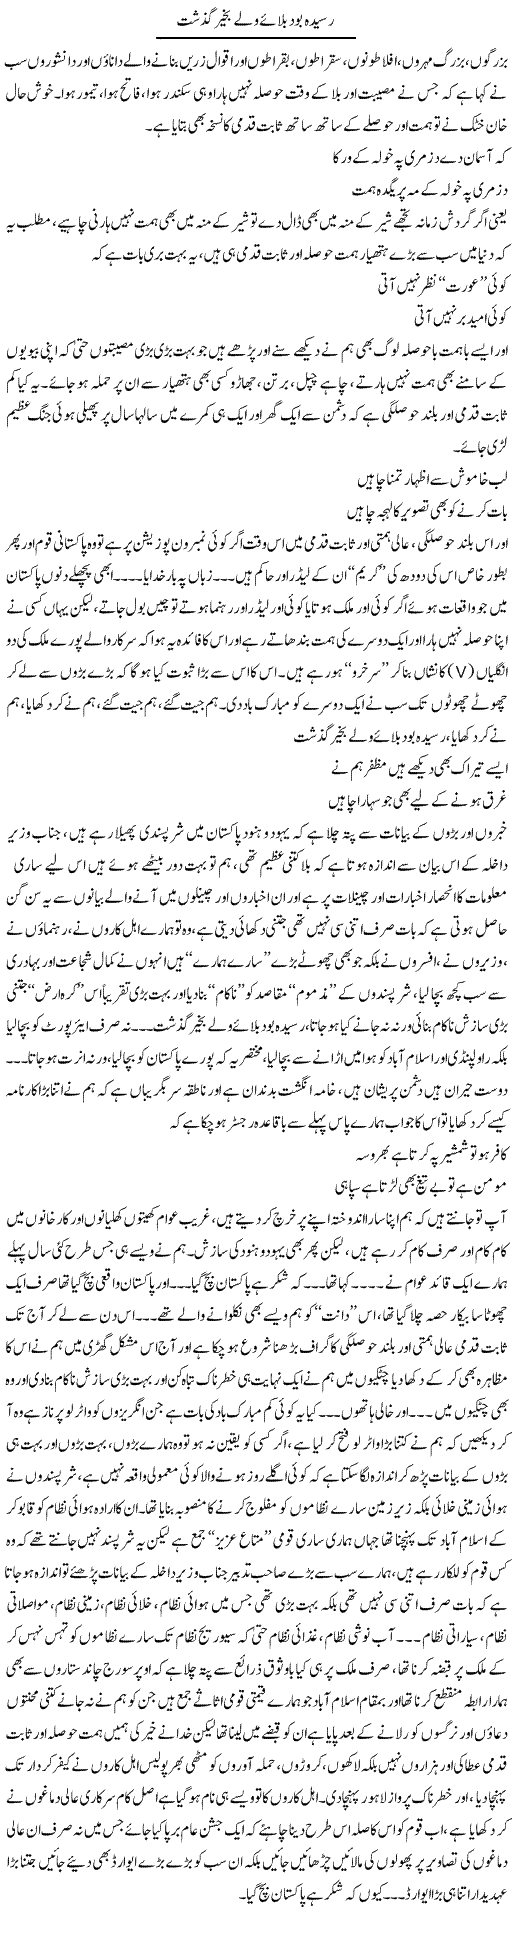 Raseeda Bood Bulaye Wale Bakhair Guzasht | Saad Ullah Jan Barq | Daily Urdu Columns